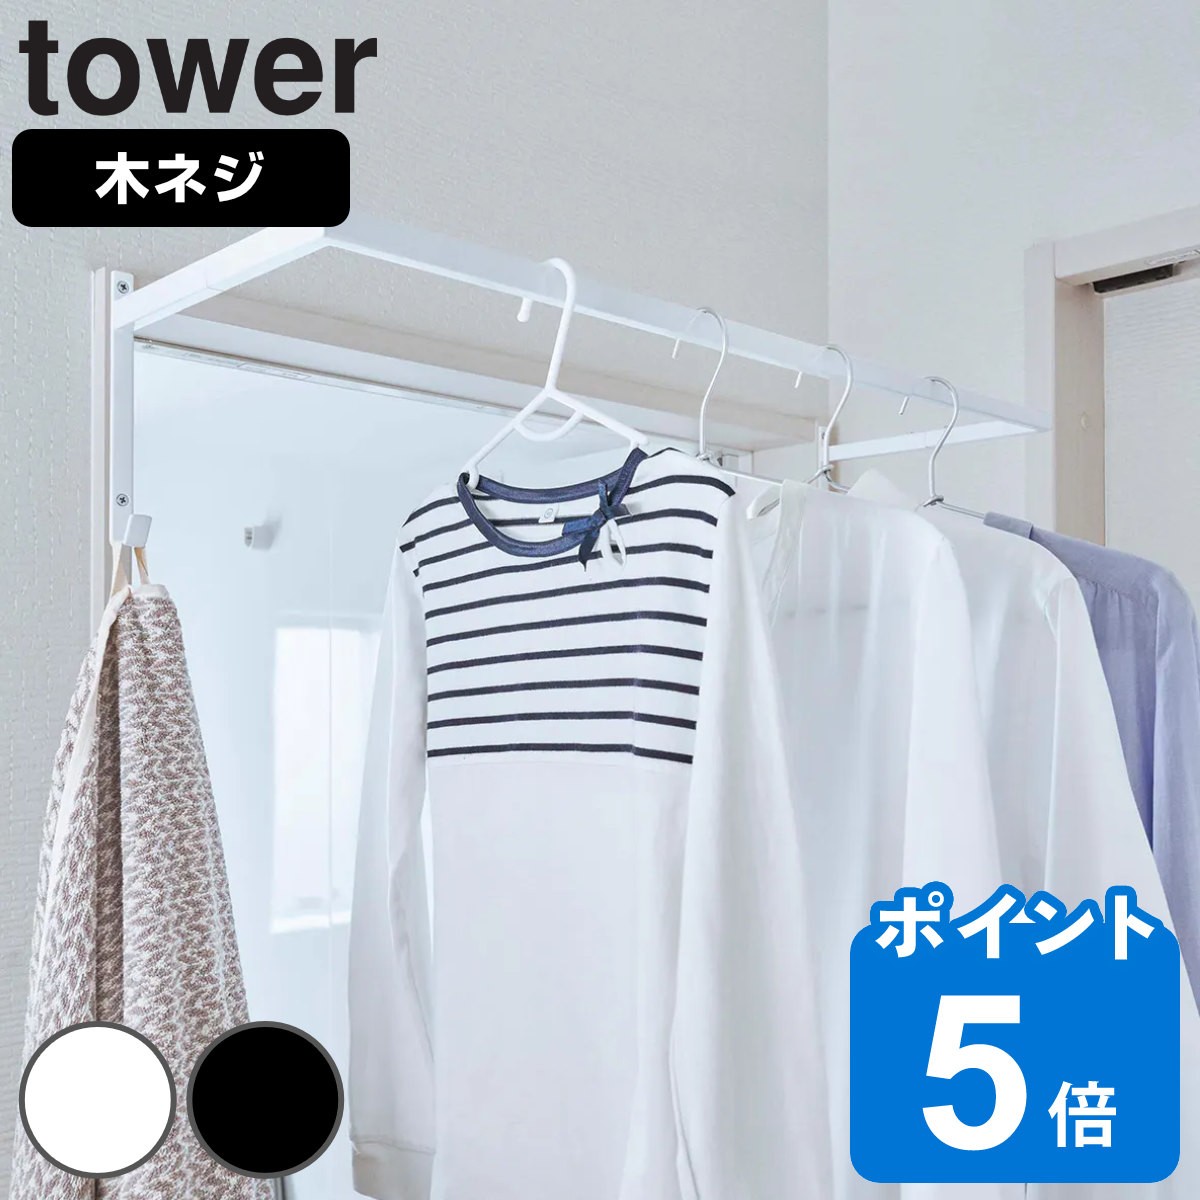 nK[ LknK[ LknK[ O ^[ tower